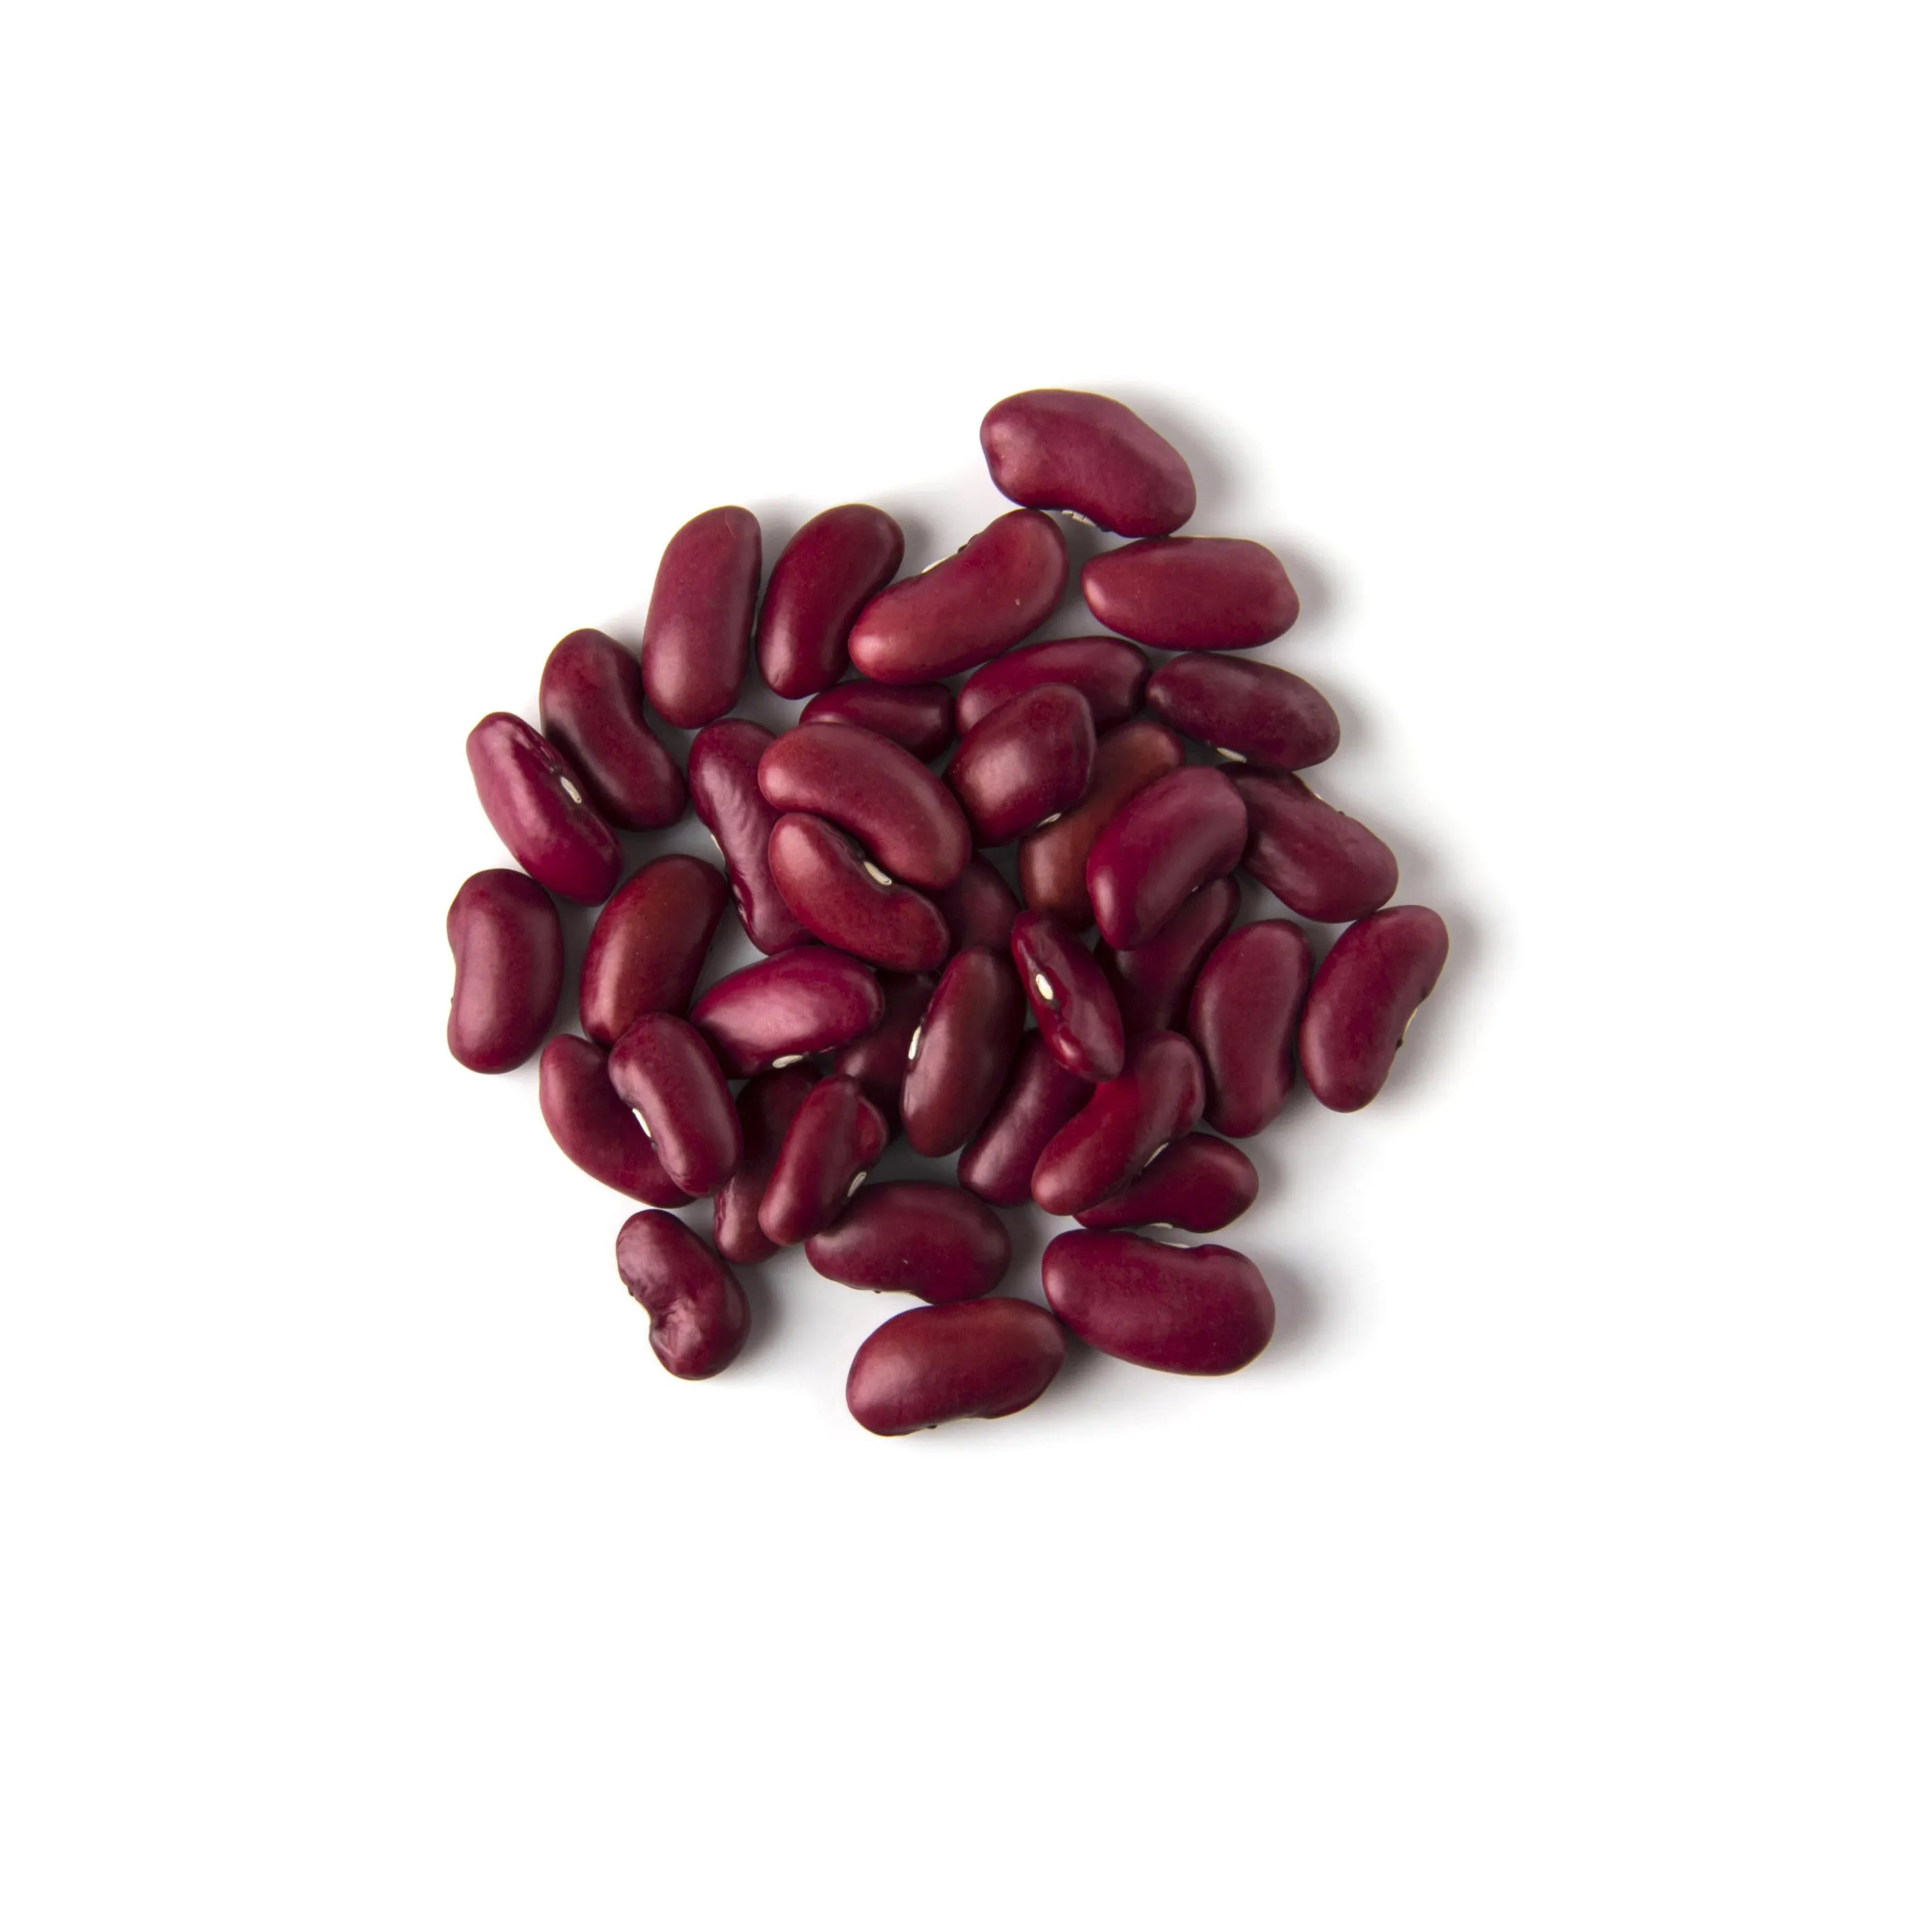 도매 공급 업체 붉은 신장 콩 판매에 대 한 저렴한 가격 붉은 신장 콩 100% 유기농 건조 신장 콩